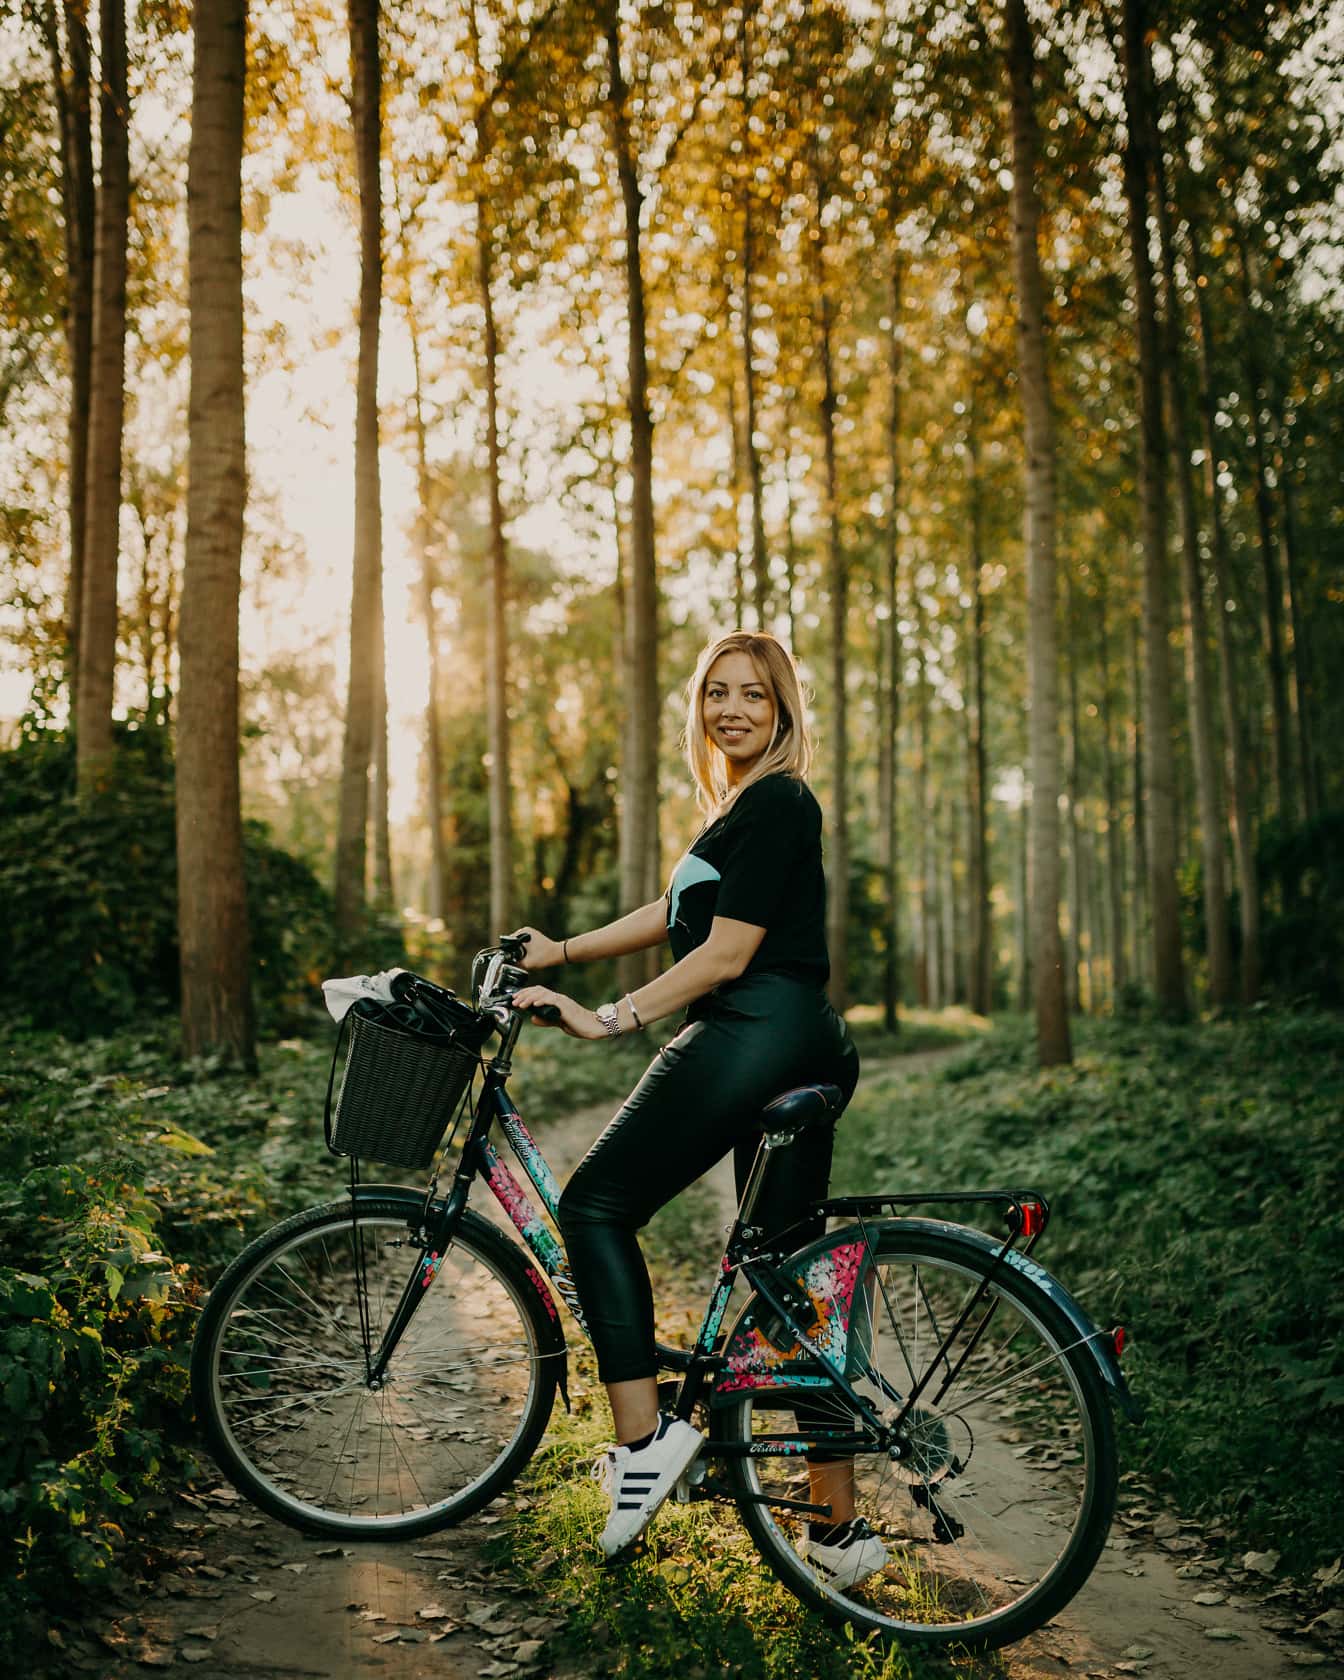 Młoda kobieta w czarnych skórzanych spodniach na rowerze po leśnej ścieżce